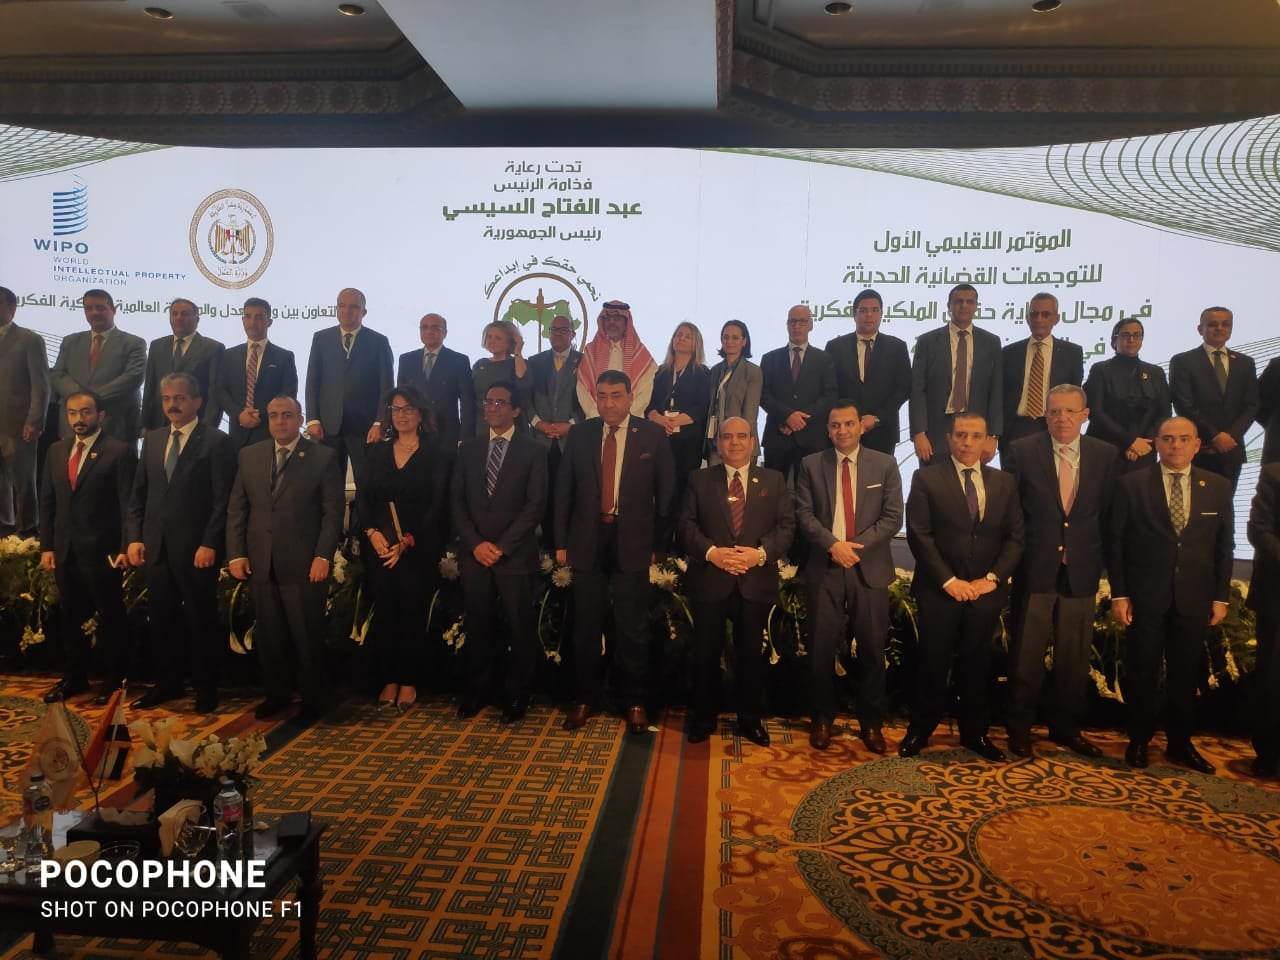 وزير العدل: إعلان القاهرة يشمل ٨ توصيات هامة للمؤتمر الإقليمي الأول لحقوق الملكية الفكرية

